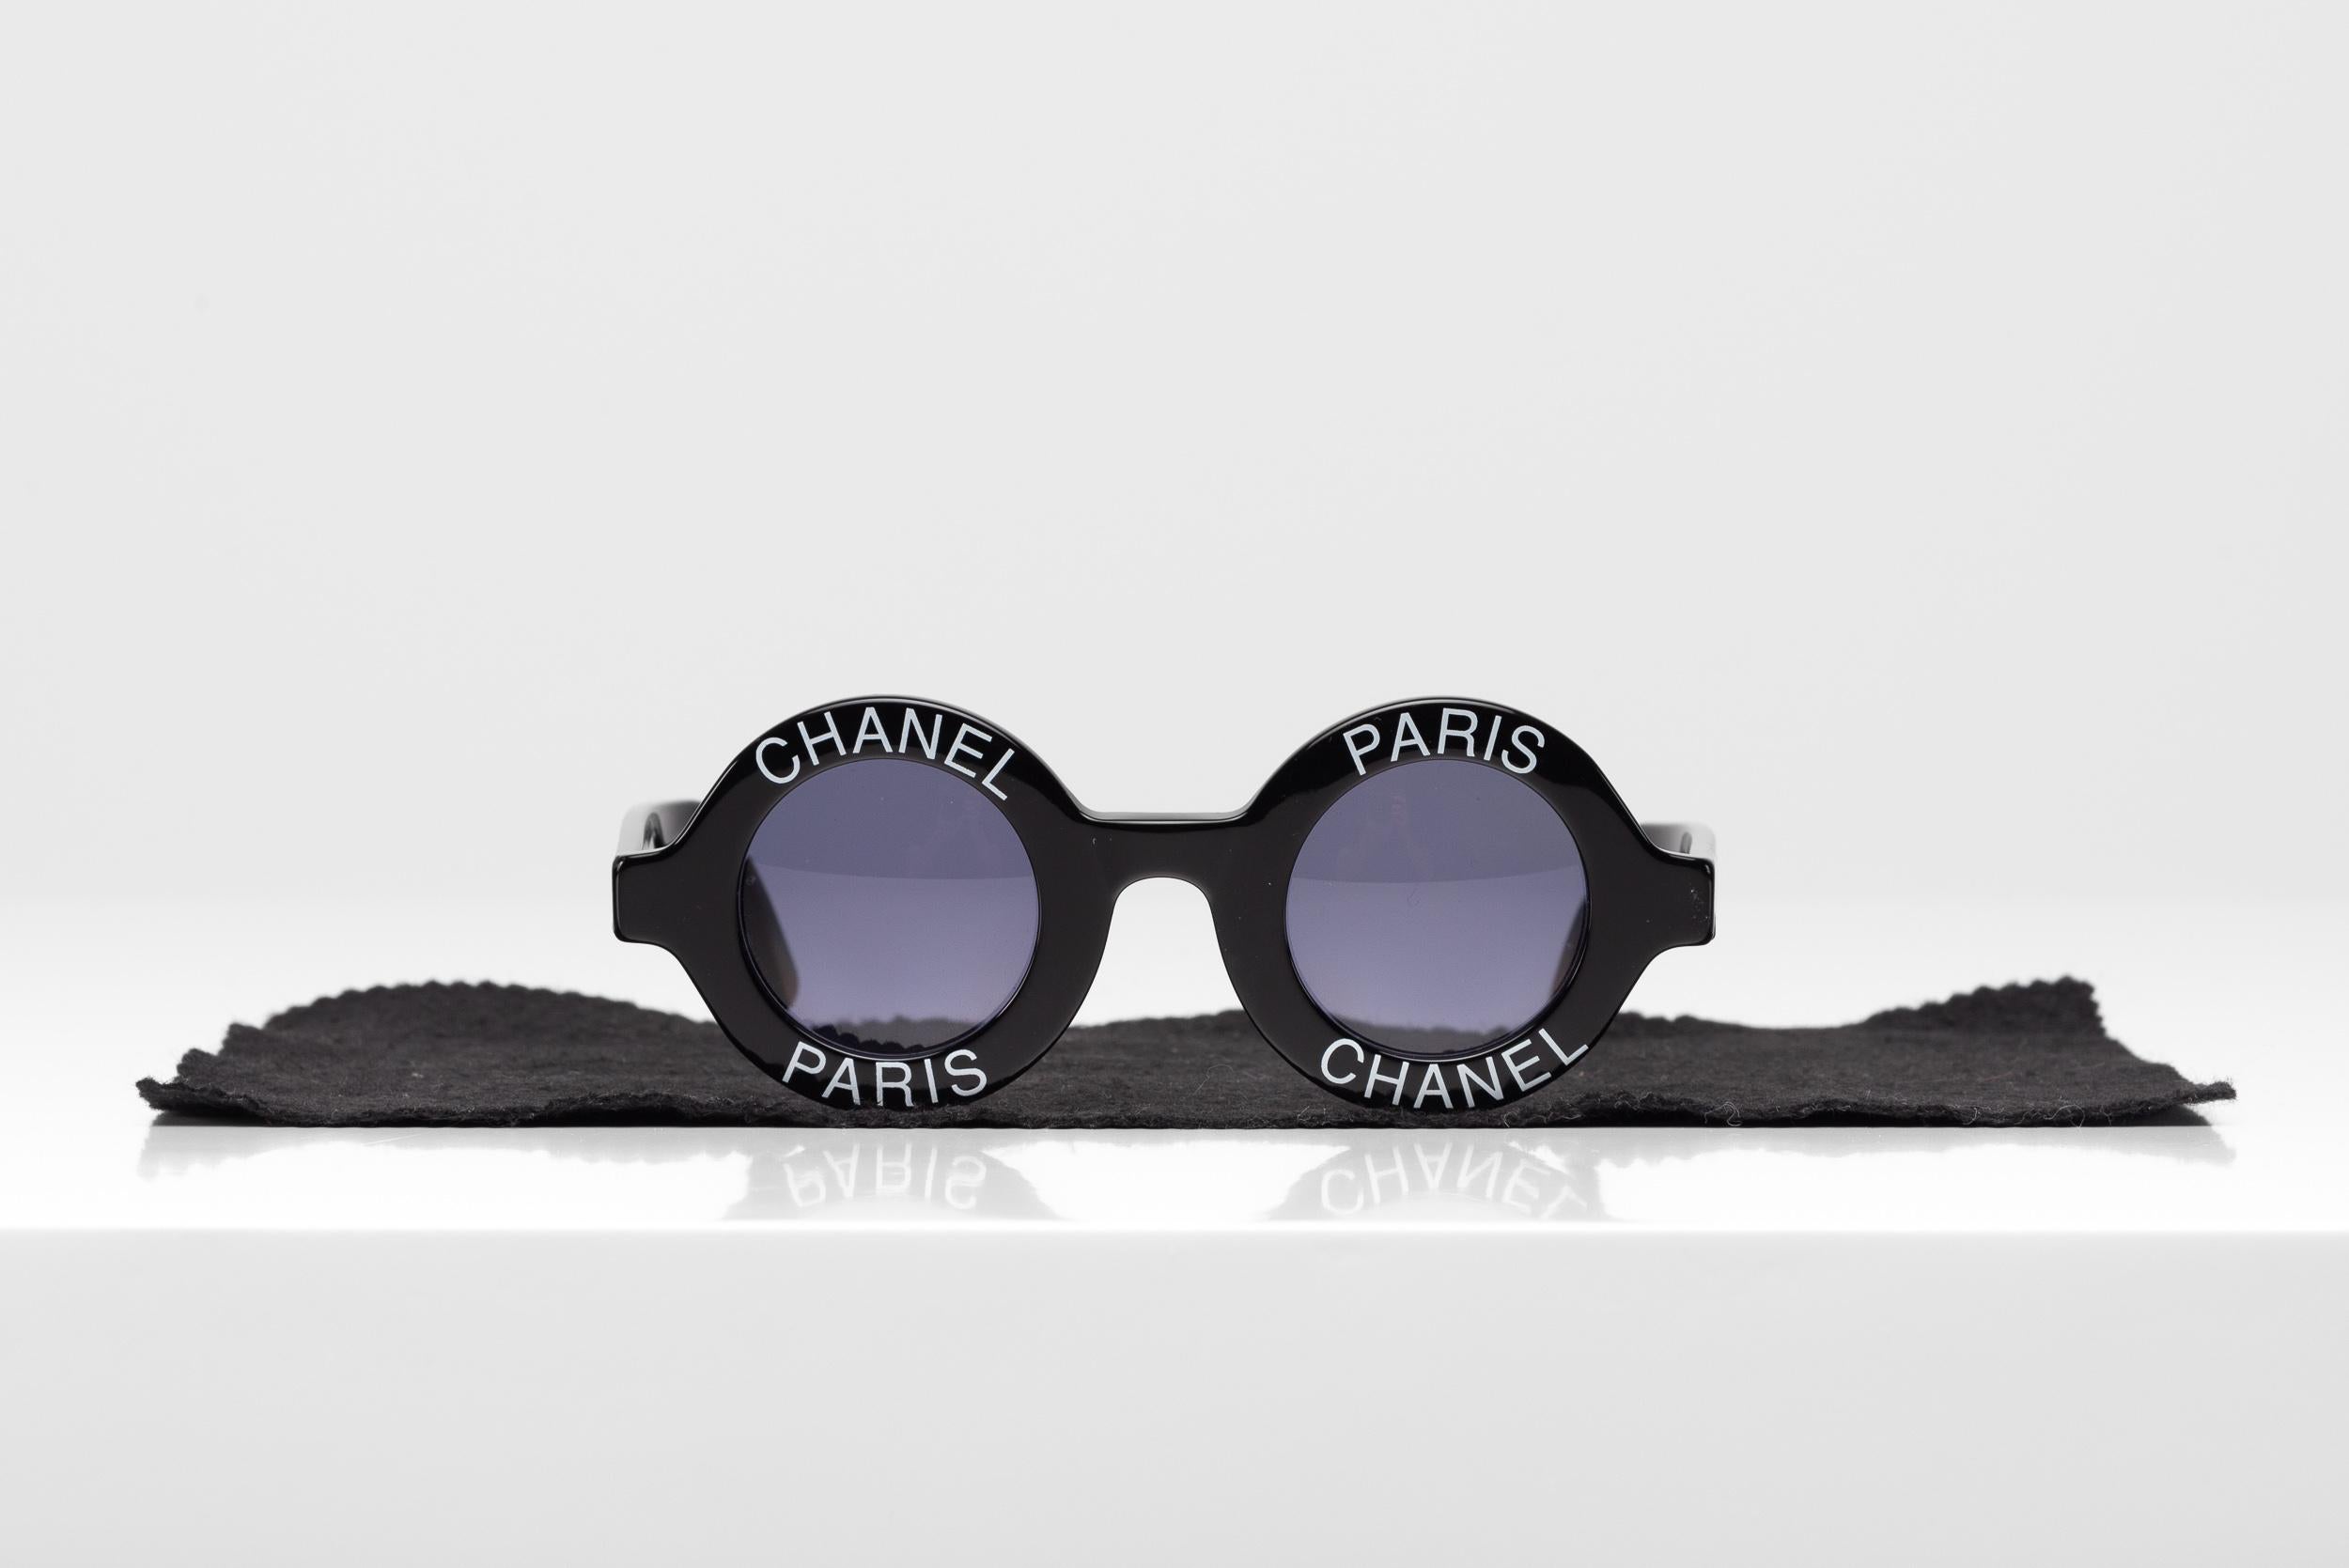 Aus der Kollektion von SAVINETI bieten wir diese Chanel Vintage-Sonnenbrille an:
- Marke: Chanel
- Modell: Runde Logo-Sonnenbrille
- Jahr: 90er Jahre
- Zustand: Gut

Die Brillen von Chanel sind ein modisches Statement und schweben zwischen